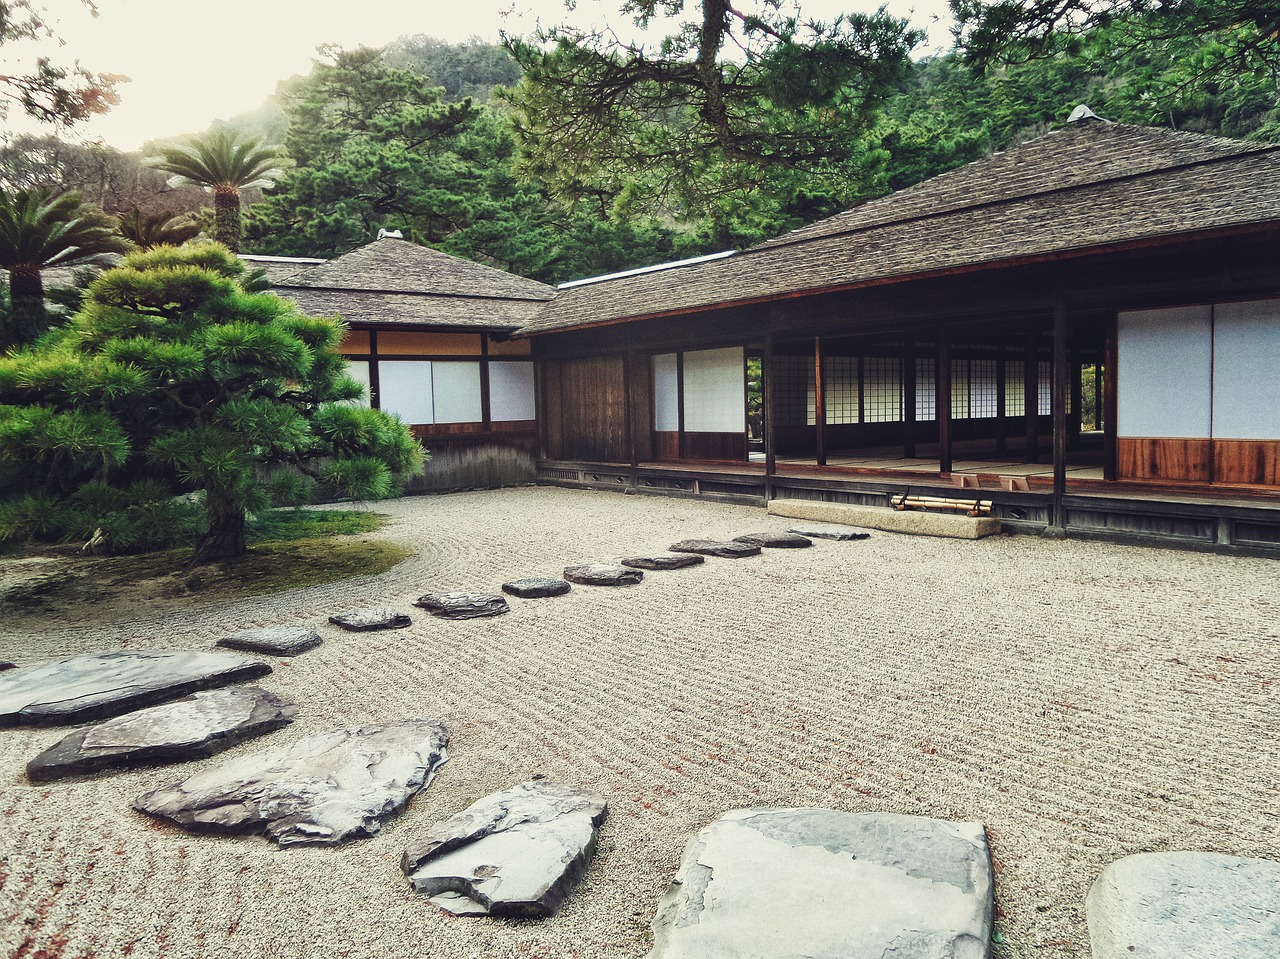 Tìm hiểu về kiến trúc zen, một phong cách thiết kế kiến trúc đặc trưng của người Nhật Bản